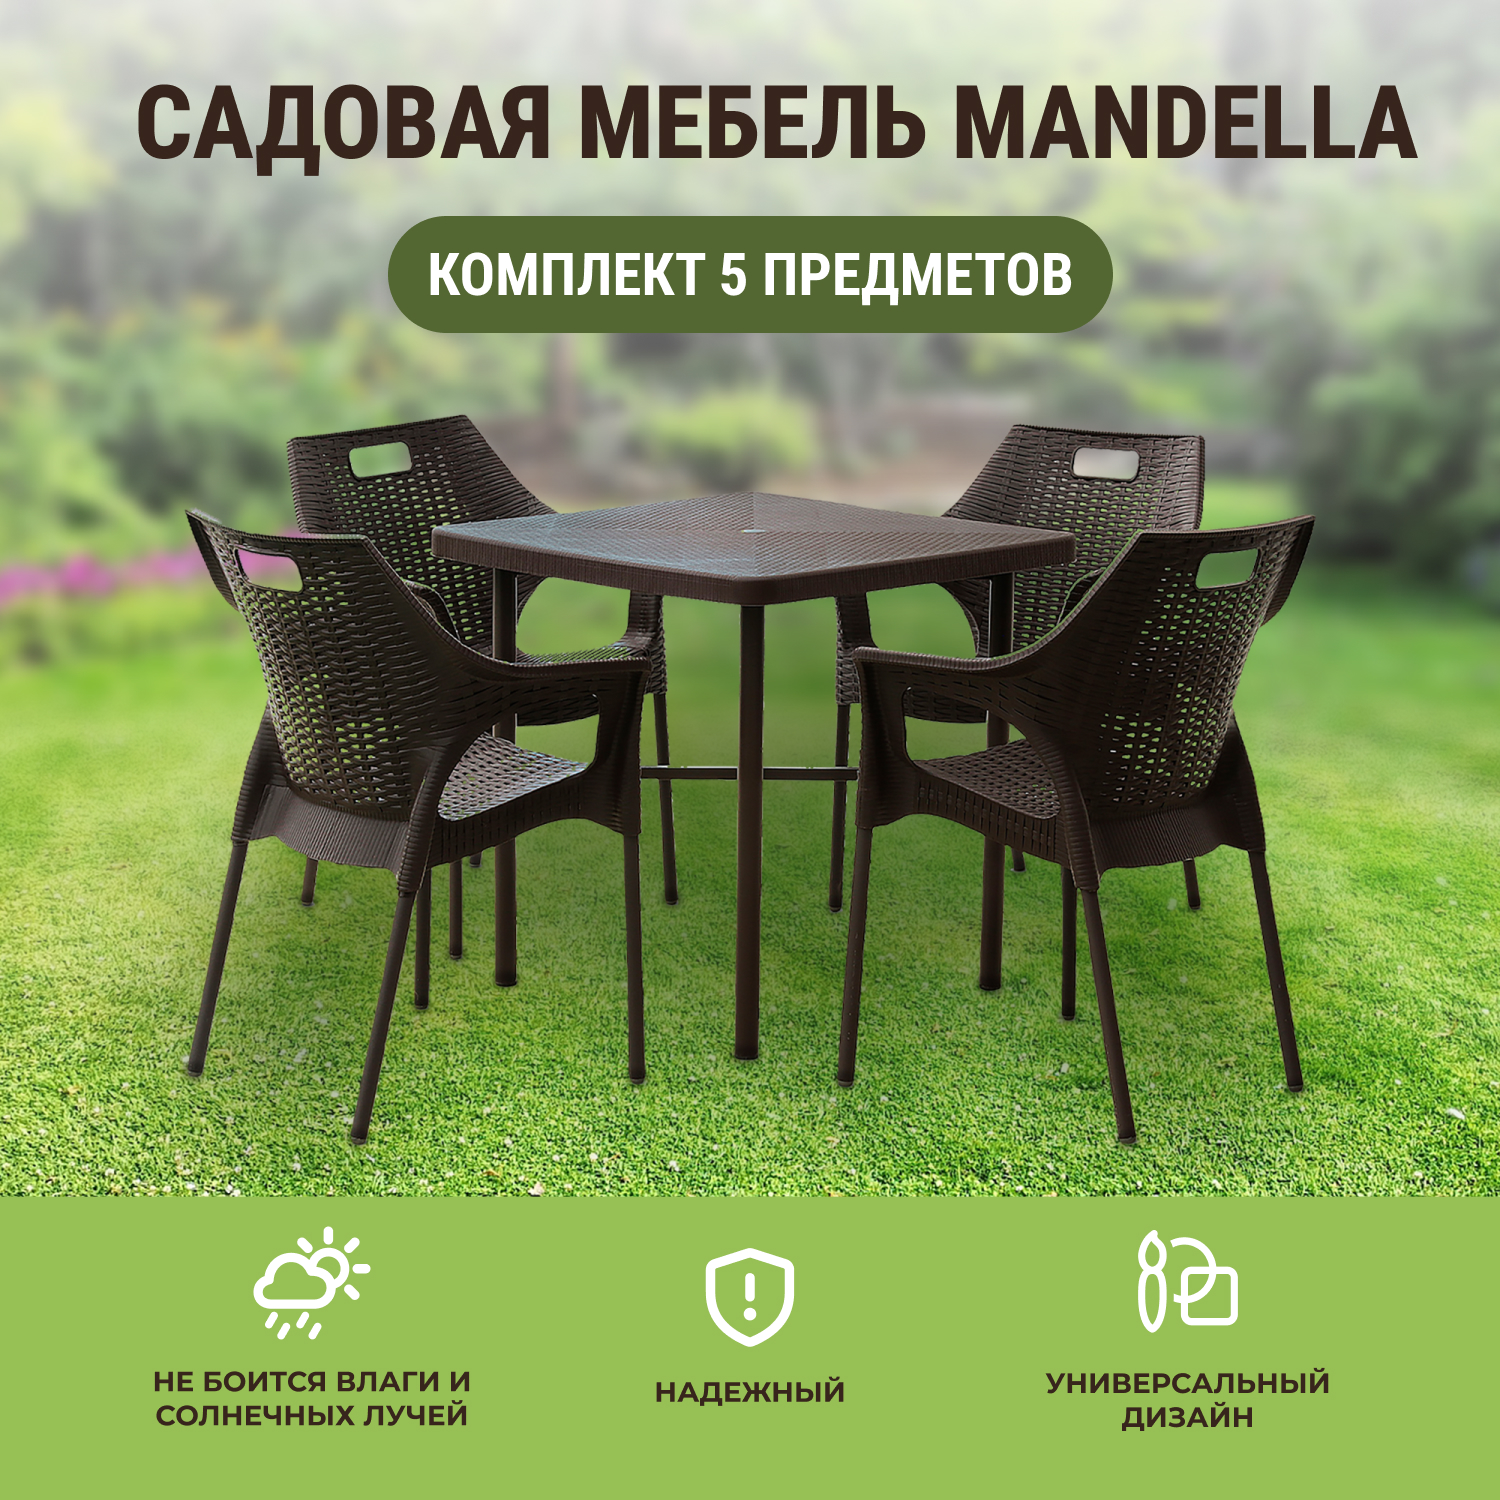 Комплект садовой мебели Mandella Zeugma and Star коричневый из 5 предметов, размер 80х80 - фото 2